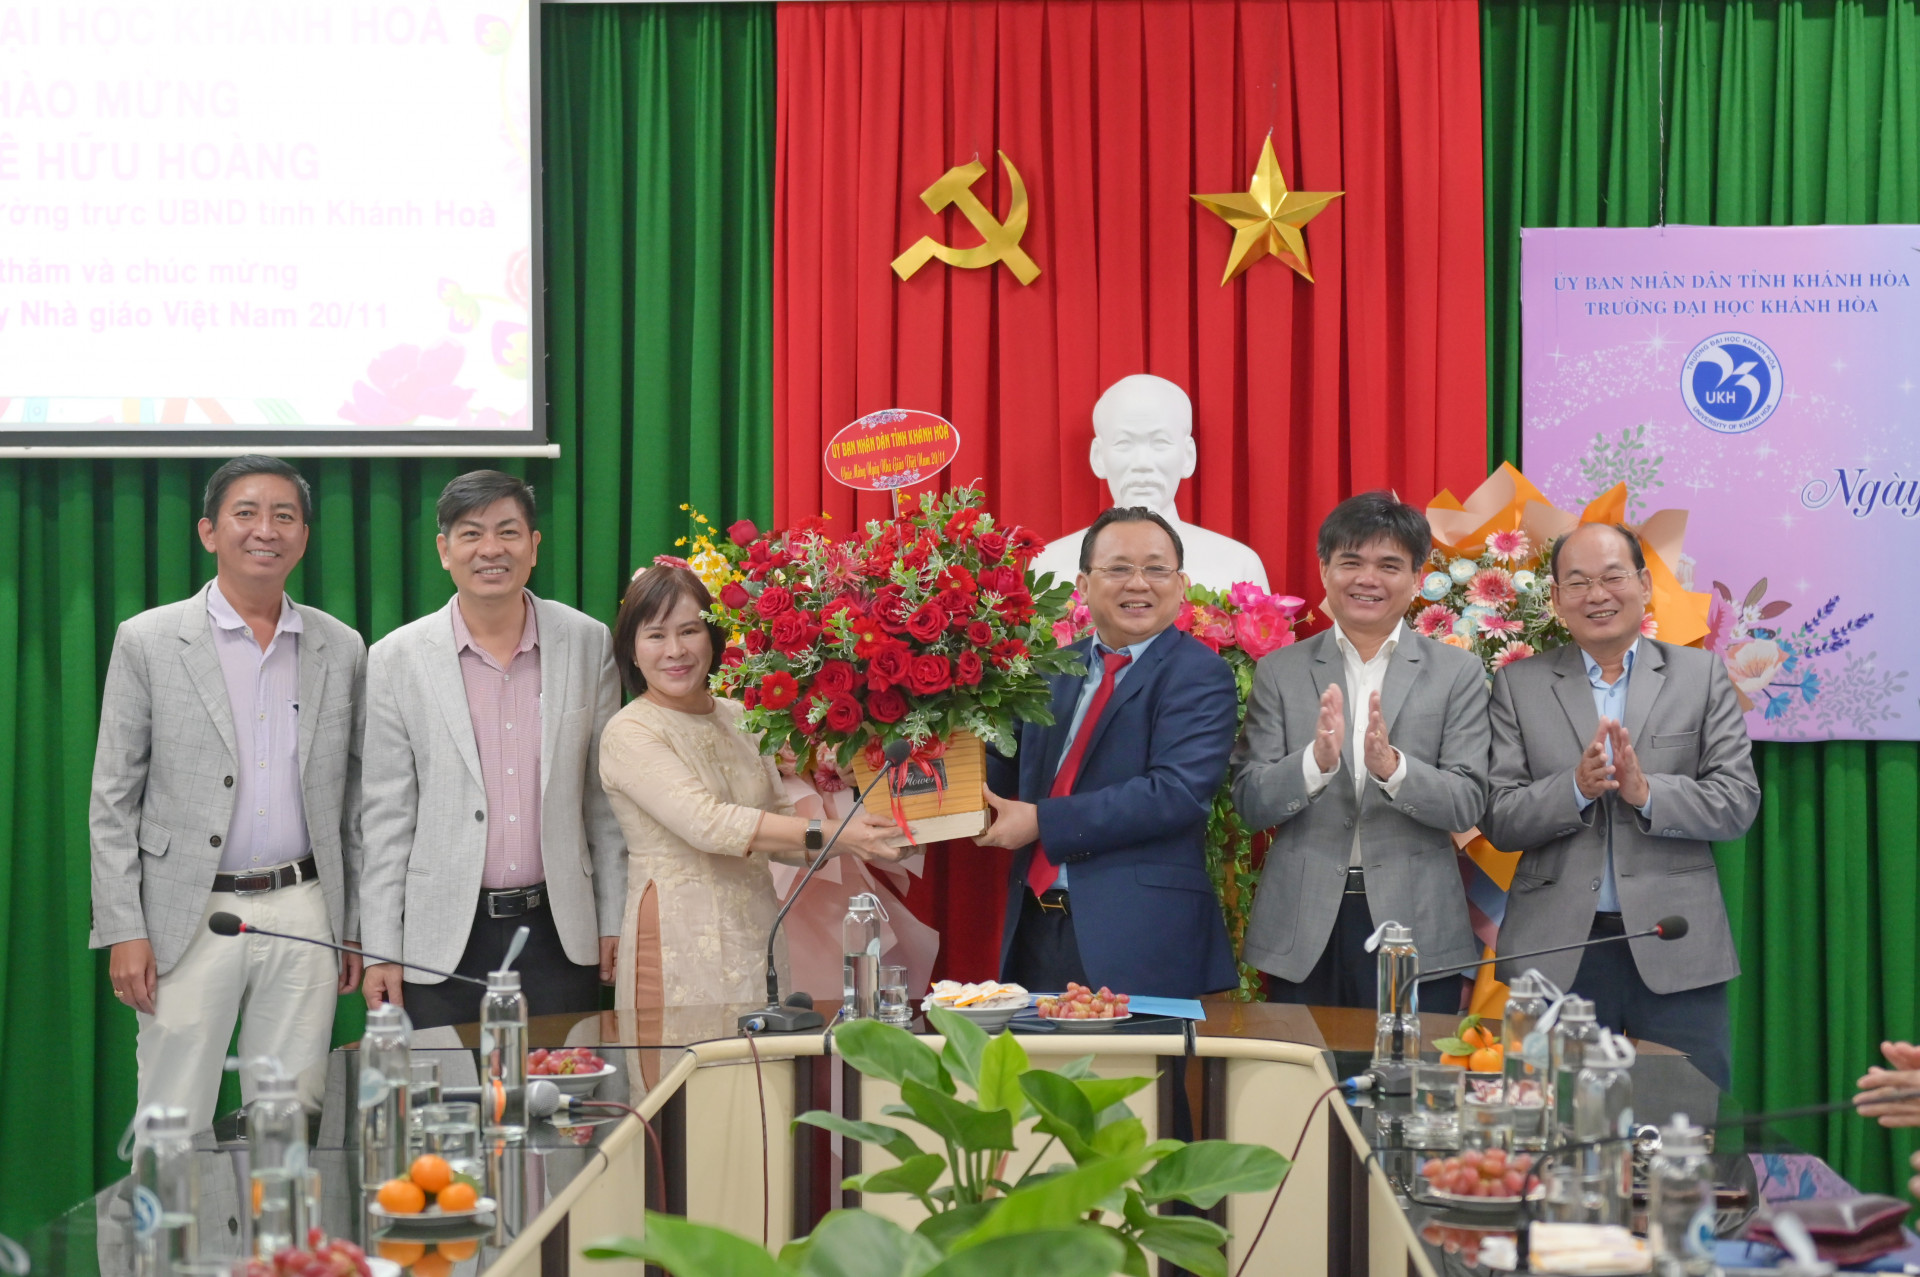 Đồng chí Lê Hữu Hoàng tặng hoa chúc mừng Trường Đại học Khánh Hoà.